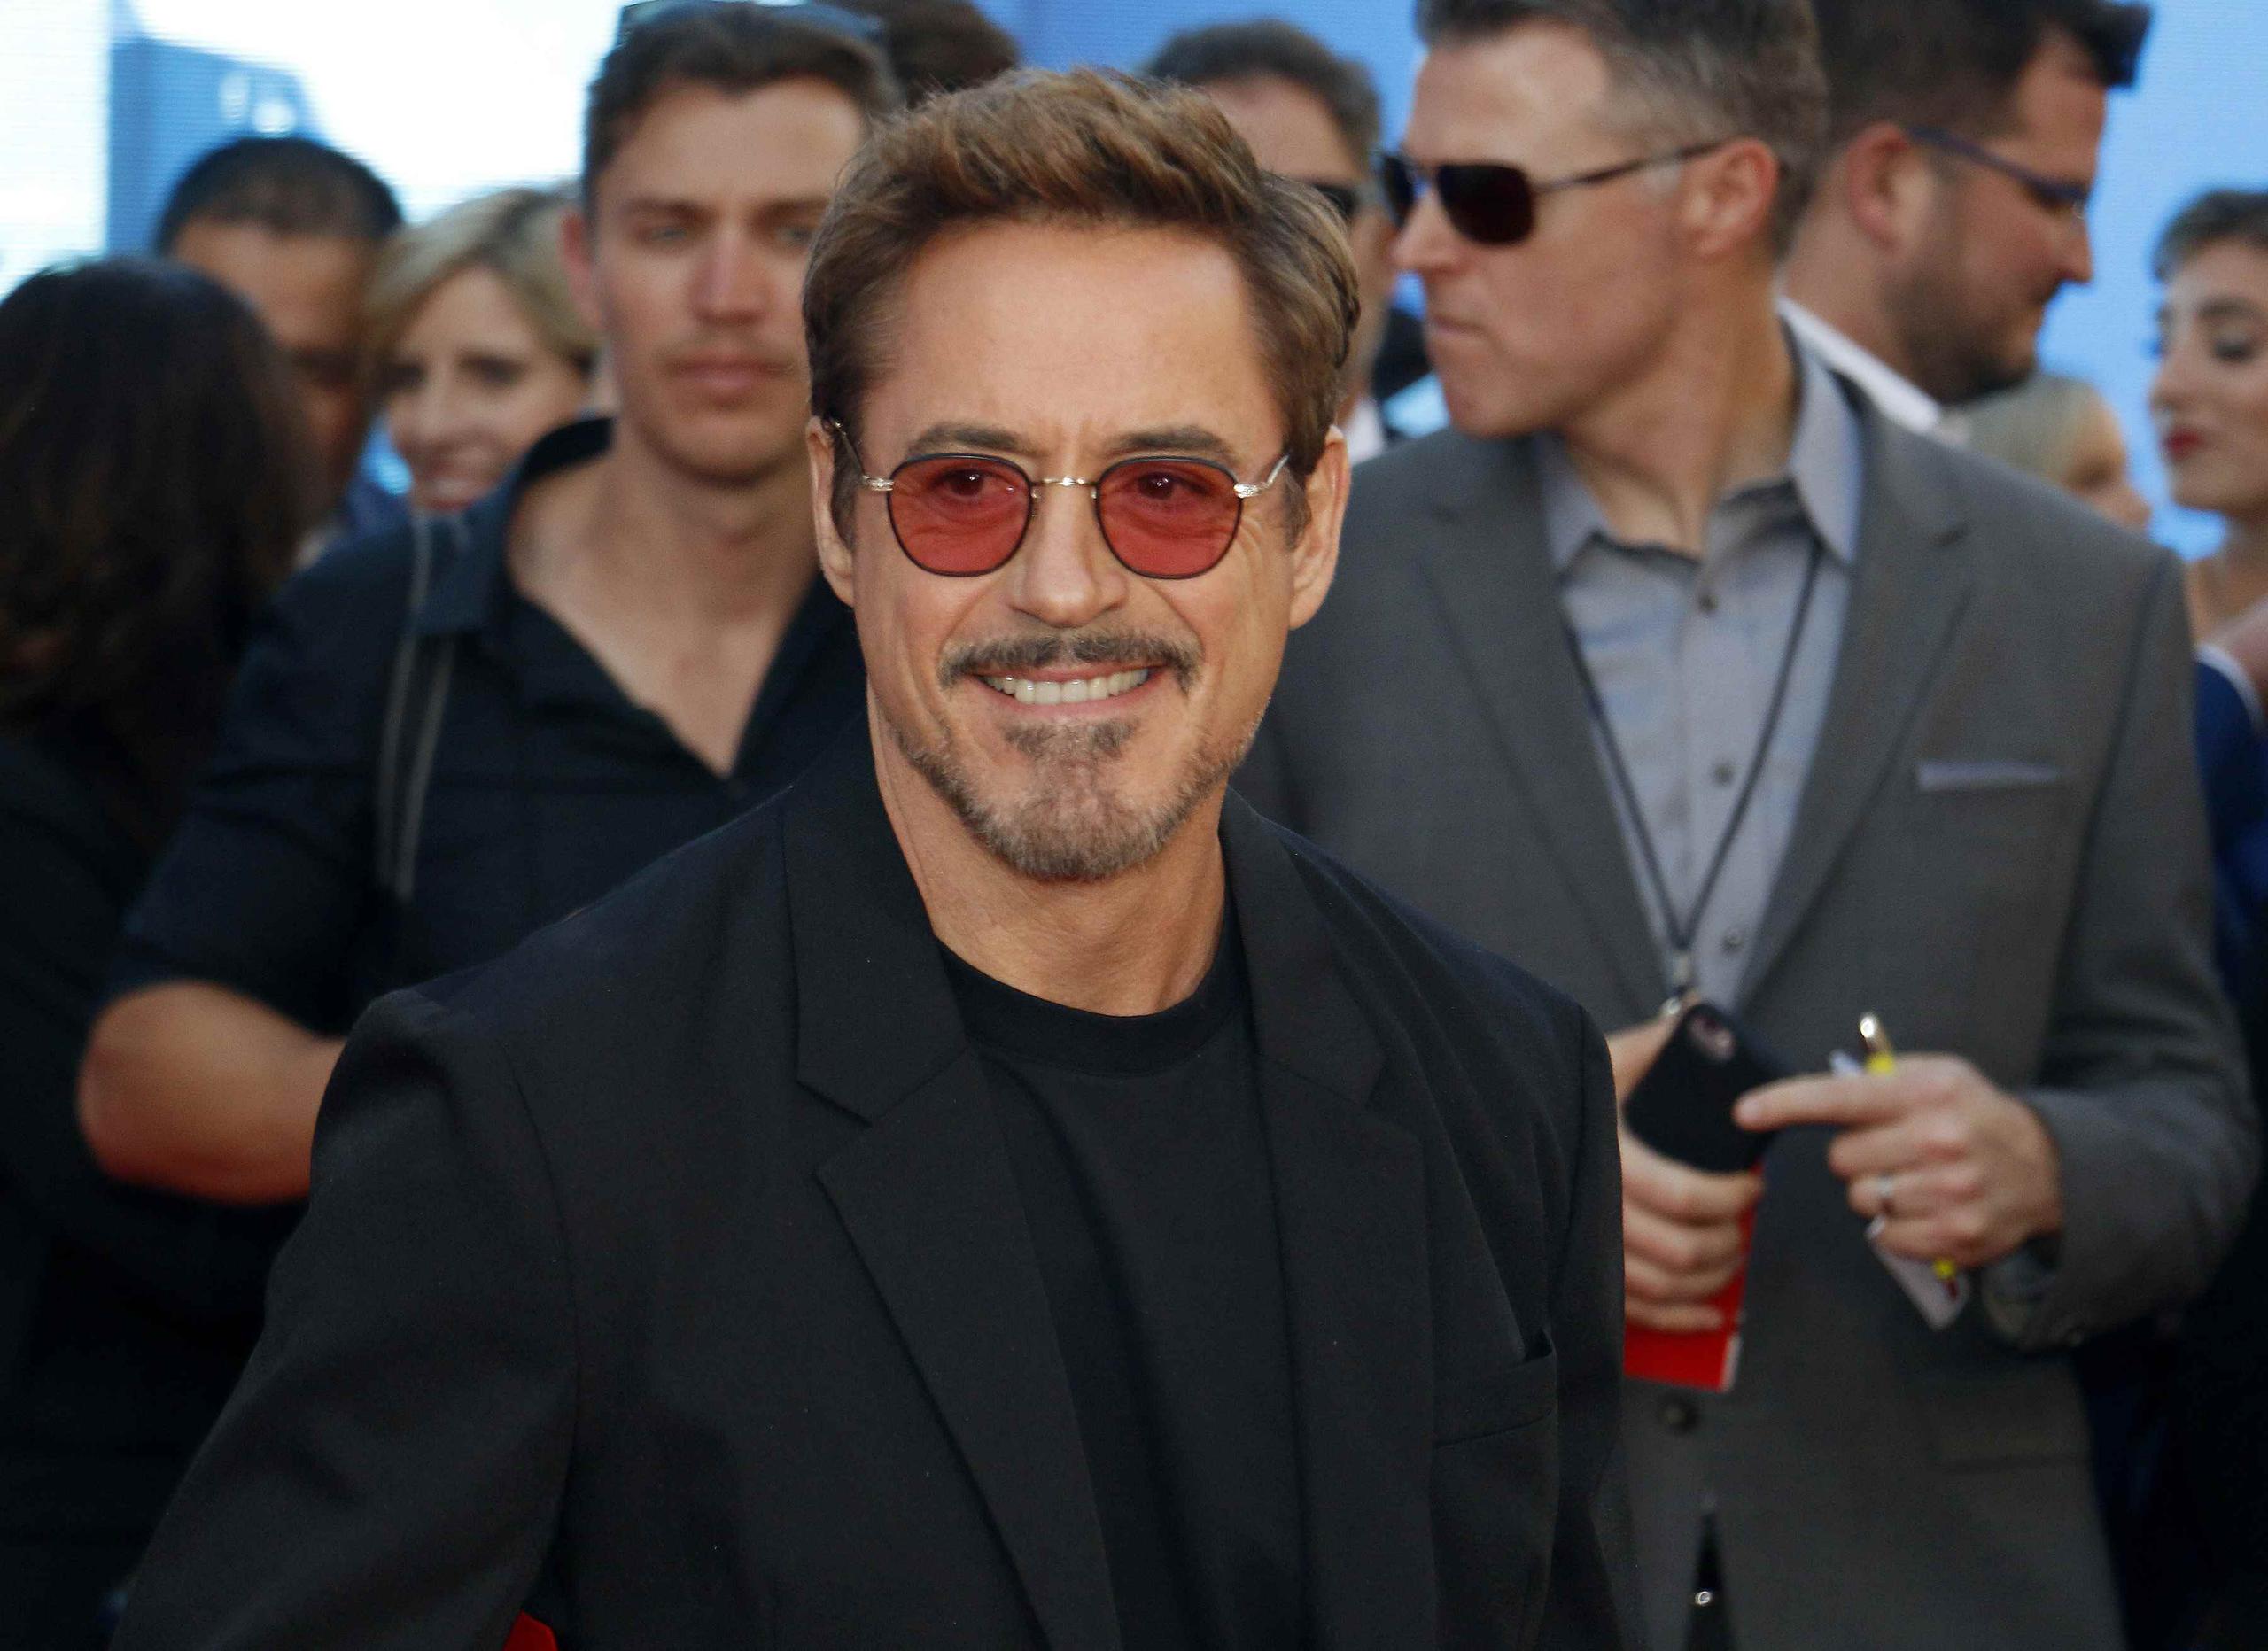 Muchos pensaron que no volverían a ver a Robert Downey Jr. como Tony Stark, tras “Avengers: Endgame”. (Shutterstock)